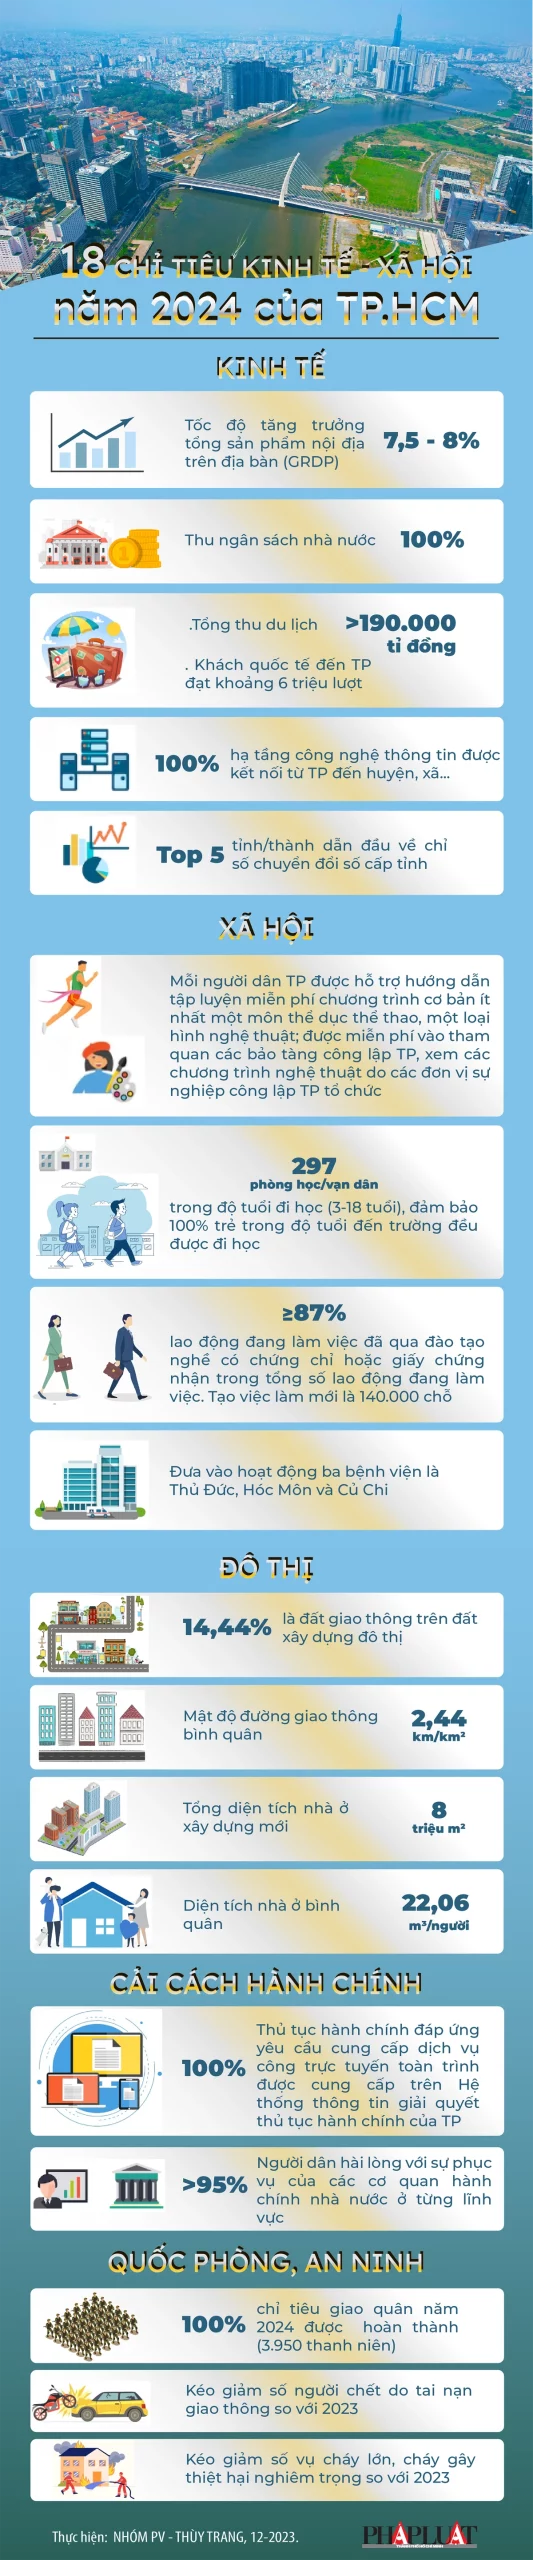 (Infographic) 18 chỉ tiêu kinh tế, xã hội, an ninh quốc phòng năm 2024 của TP.HCM